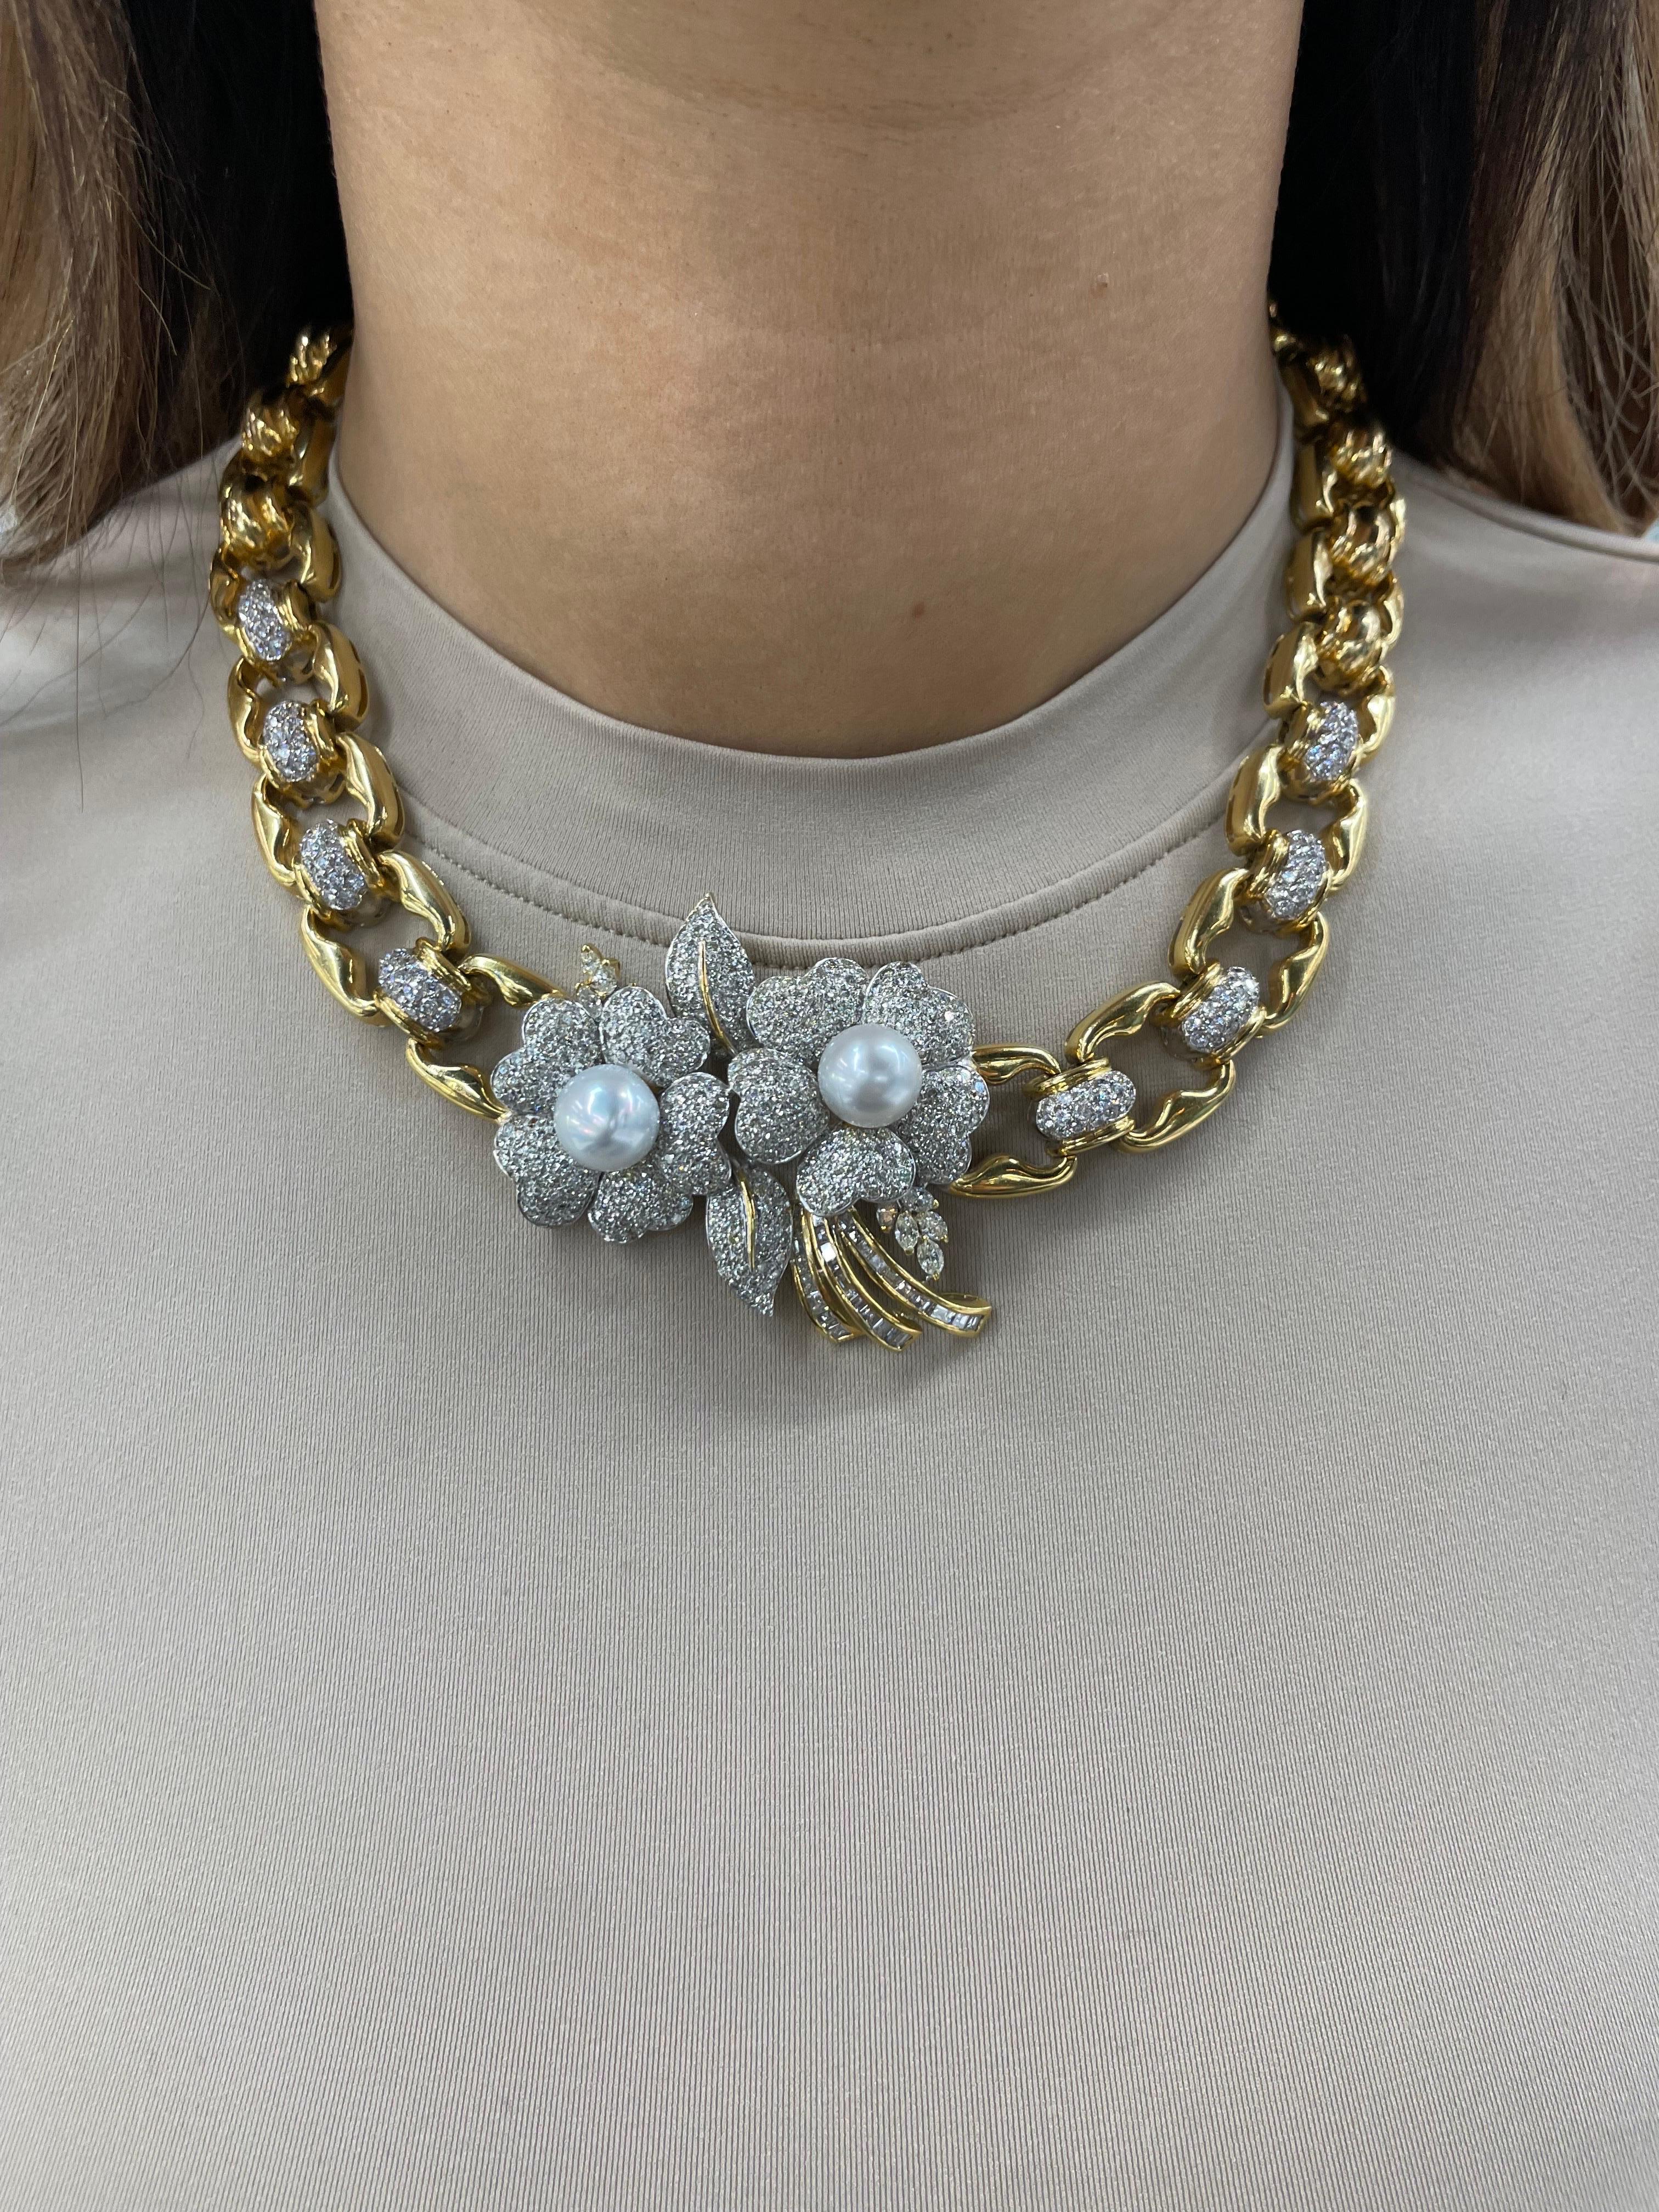 Vintage, 18 Karat Gelbgold Halskette mit zwei Diamanten floralen Zentrum mit weißen Perlen, 10-11 MM, auf einem Diamant-Glied Halskette mit einem Gewicht von 155,2 Gramm.
Farbe G-H
Klarheit SI